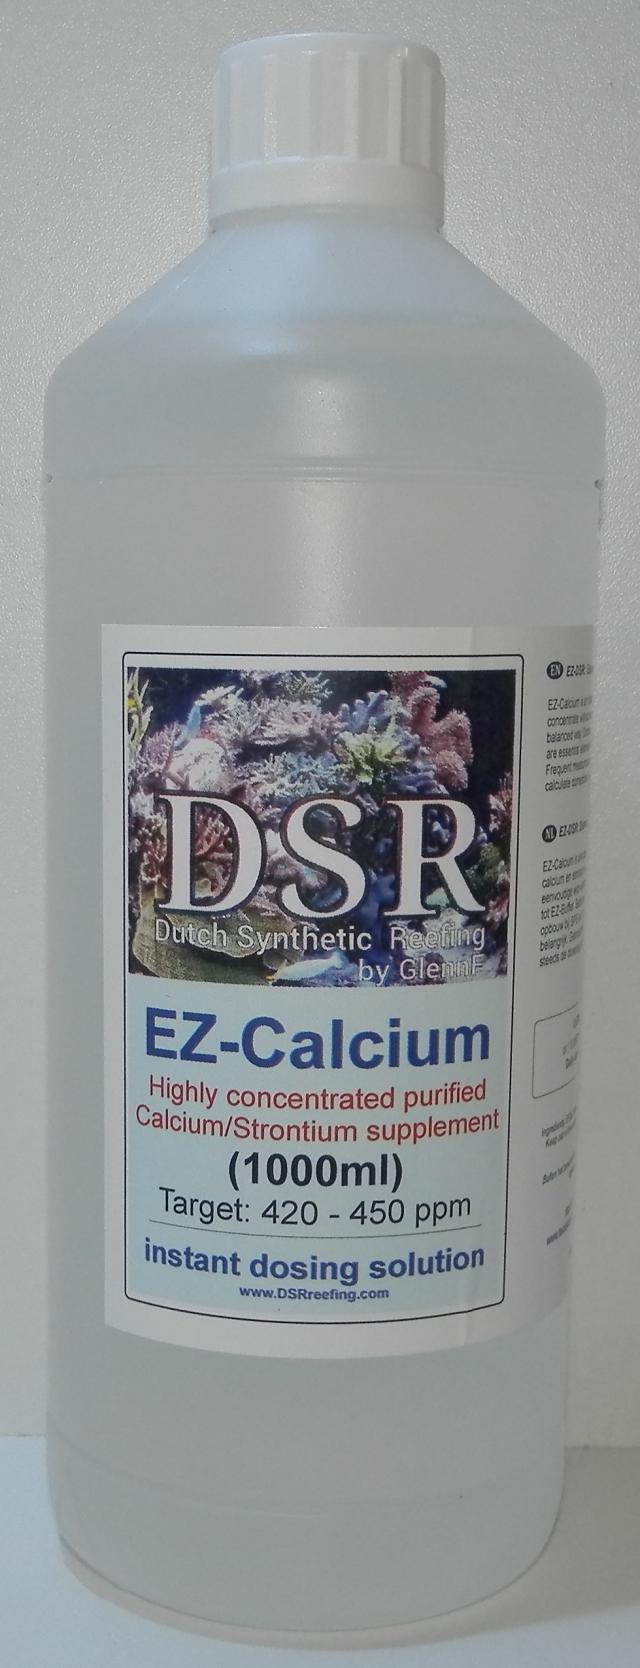 EZ-calcium 1000ml